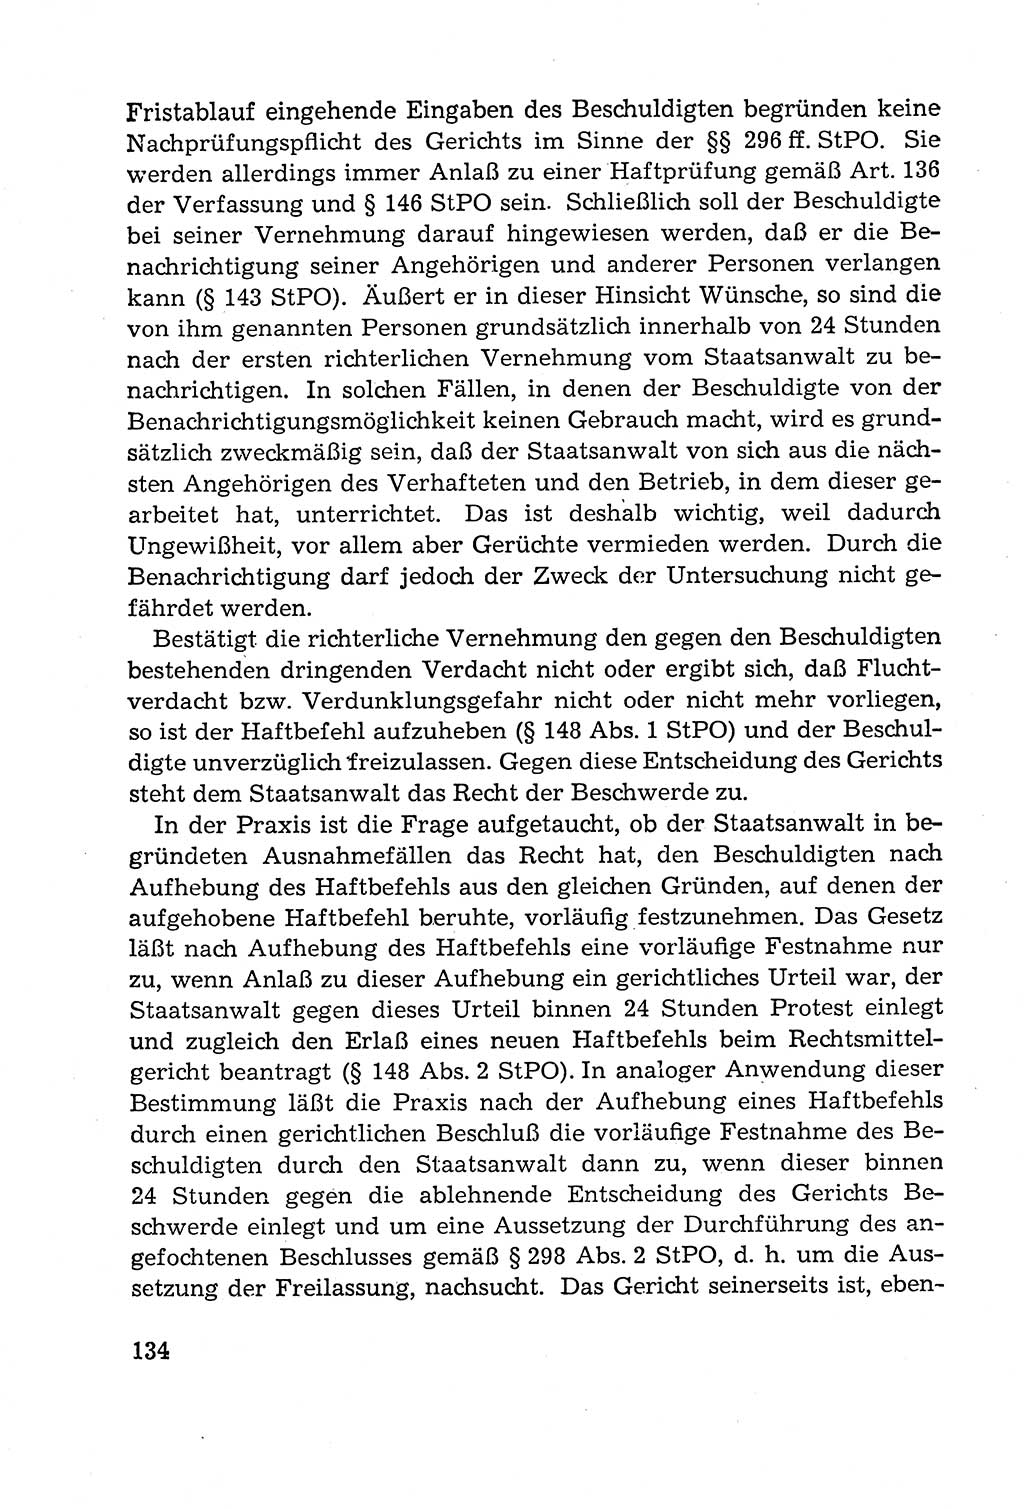 Leitfaden des Strafprozeßrechts der Deutschen Demokratischen Republik (DDR) 1959, Seite 134 (LF StPR DDR 1959, S. 134)